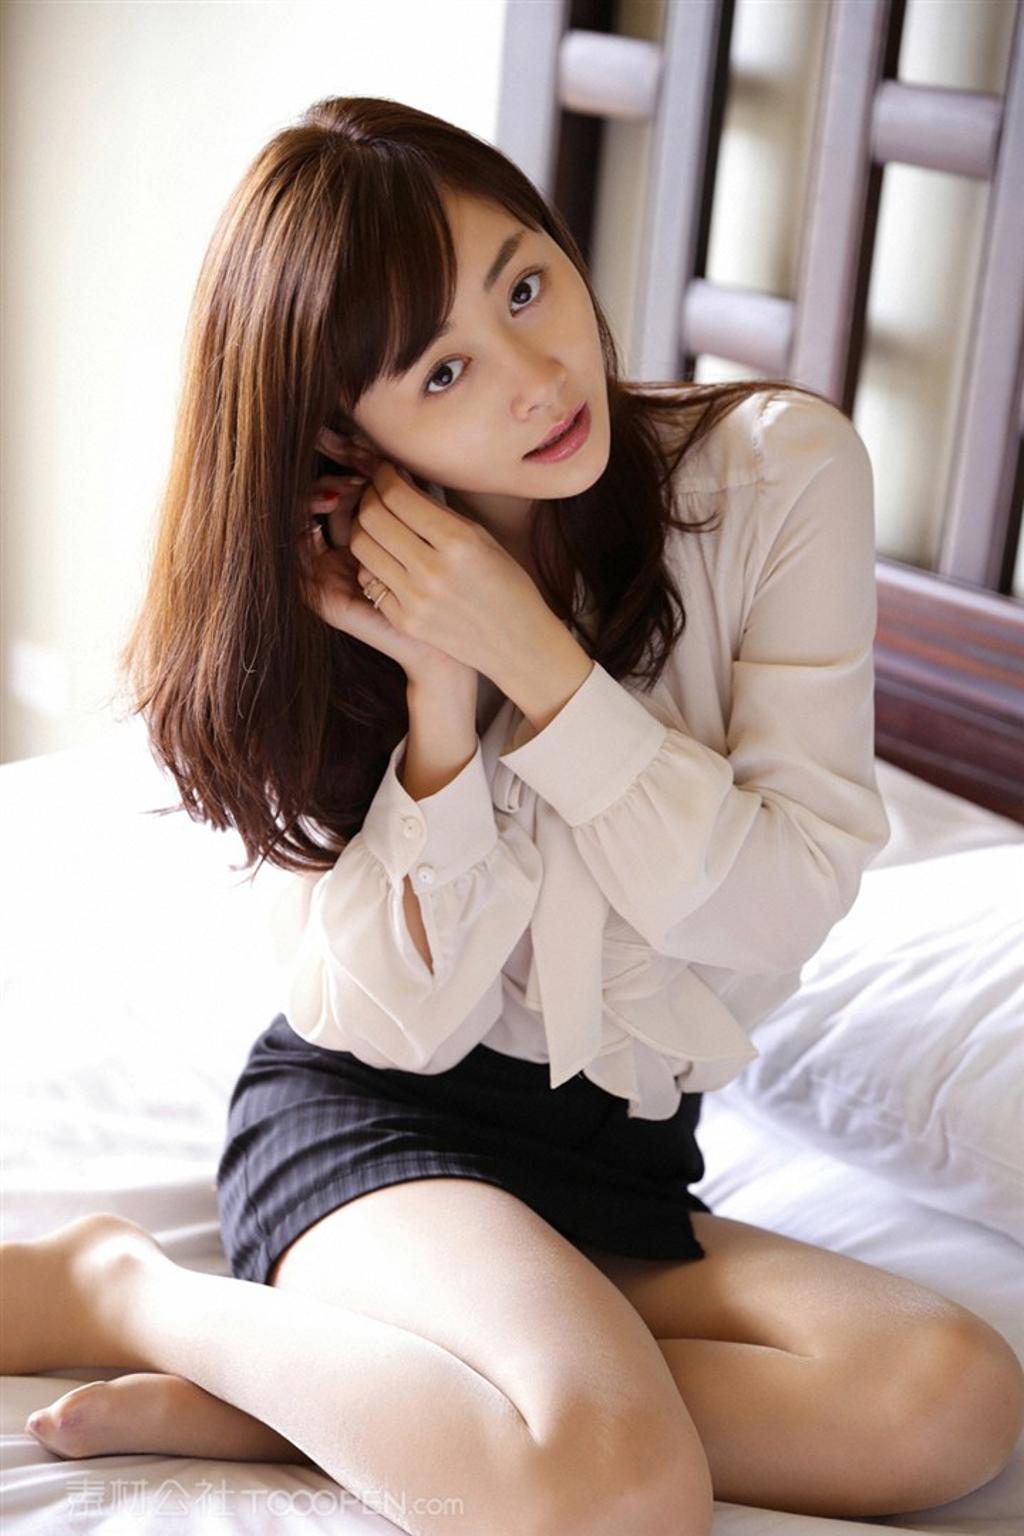 坐在床上的日本高清性感美女杉原杏璃图片